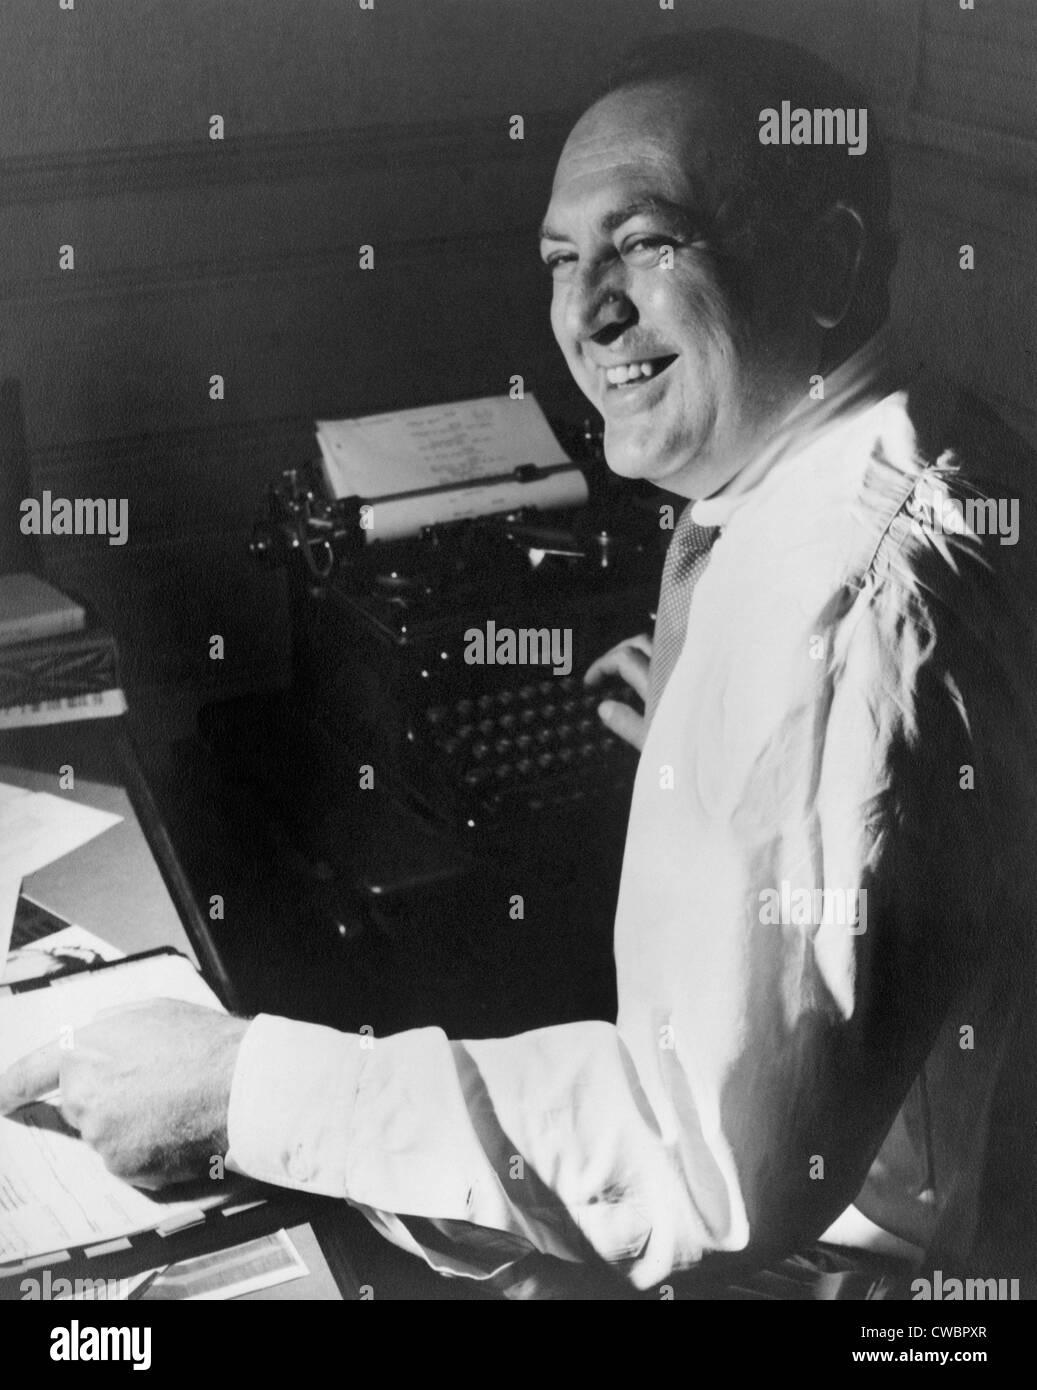 Filmproduzent Val Lewton (1904 – 1951), arbeiten an seinem Schreibtisch, mit einer hand auf ein Skript und andererseits auf einer Schreibmaschine. Ca. 1945. Stockfoto